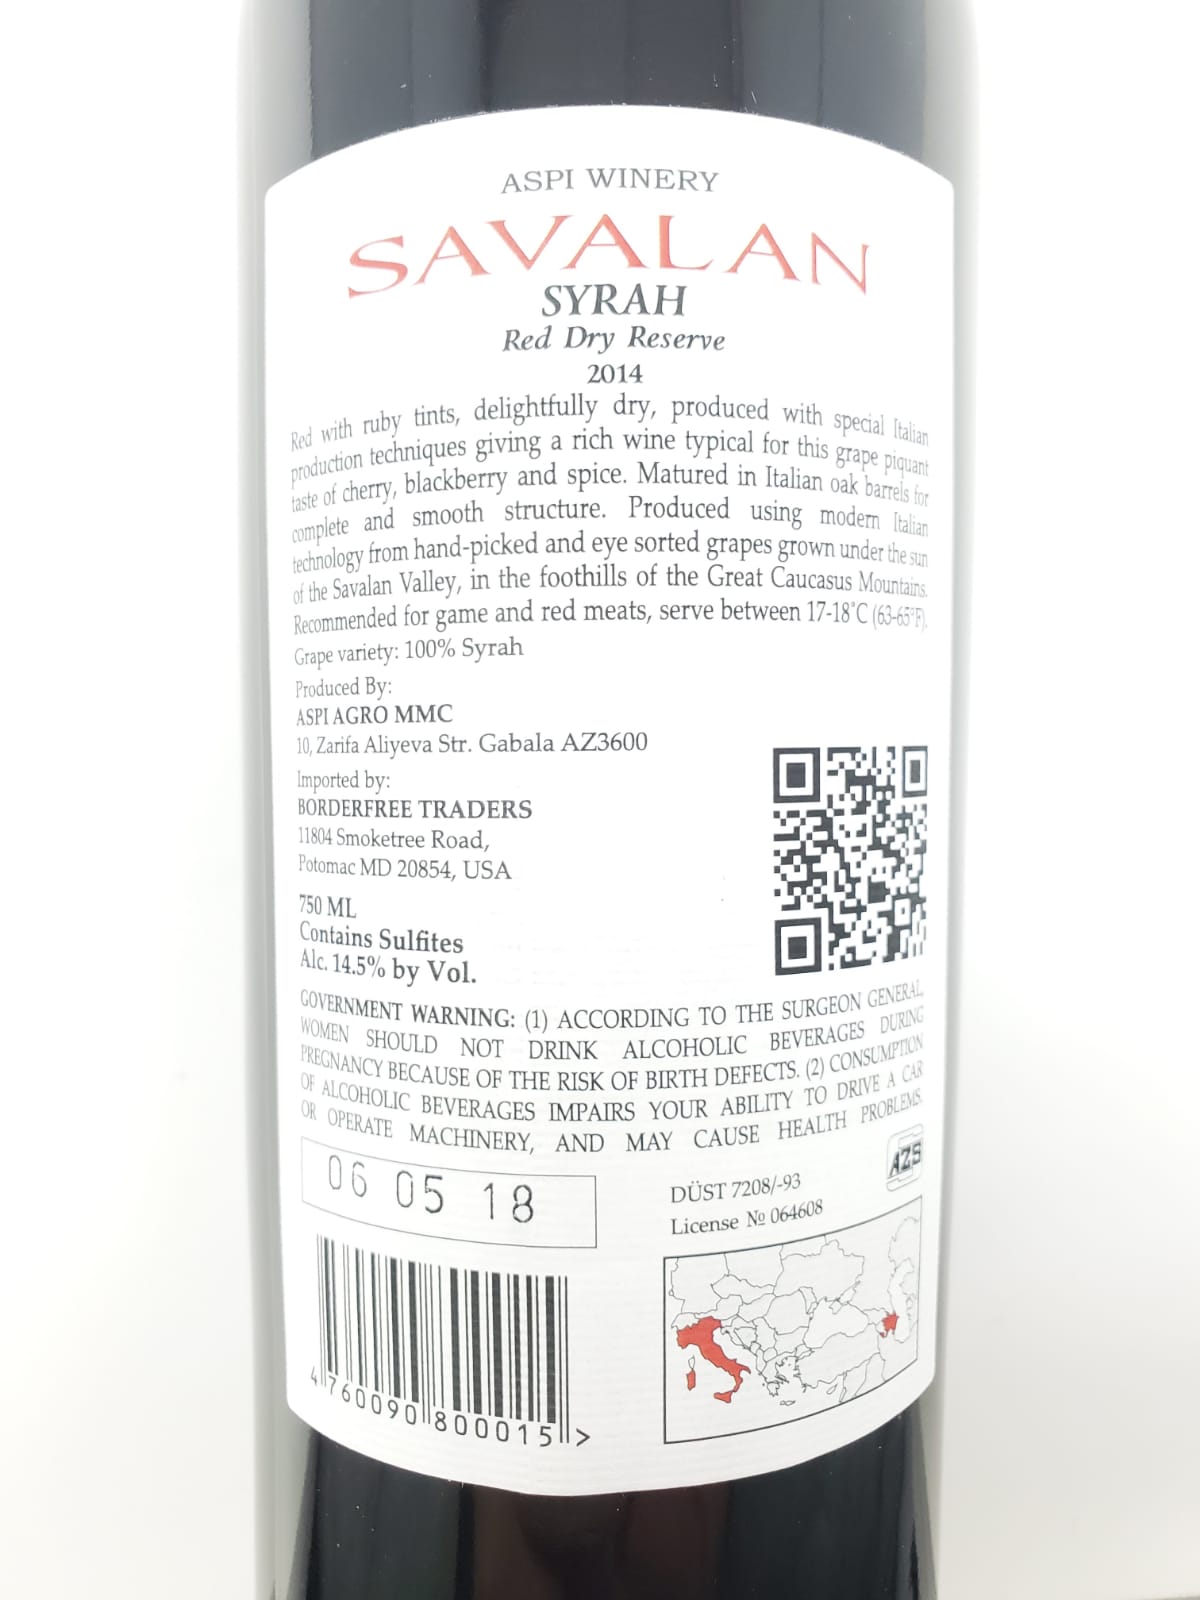 AZERBAIJANIAN-ITALIAN SAVALAN SYRAH RED DRY RESERVE WINE 0.75l